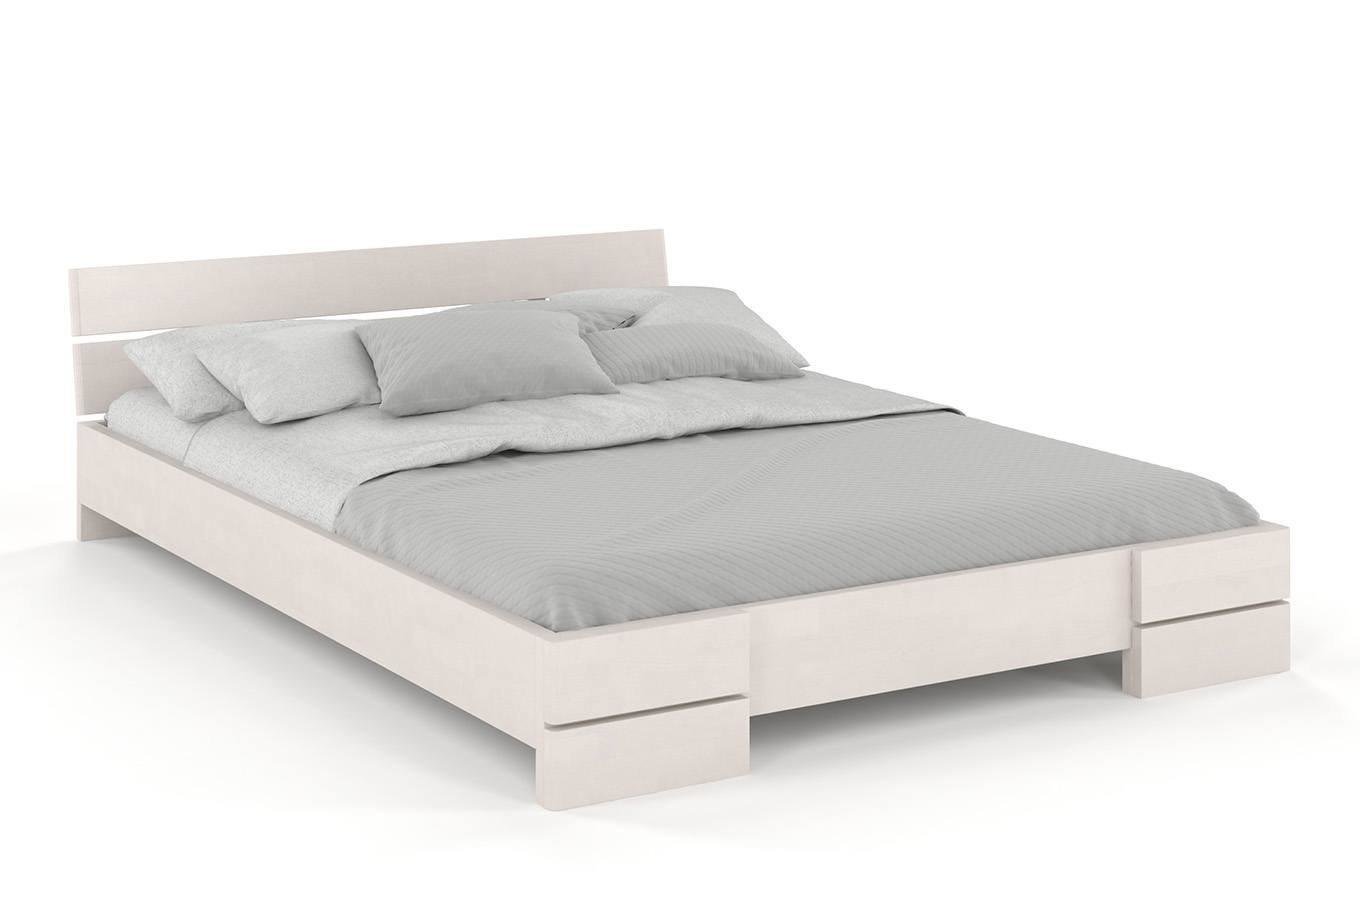 Łóżko drewniane bukowe Visby Sandemo / 90x200 cm, kolor biały